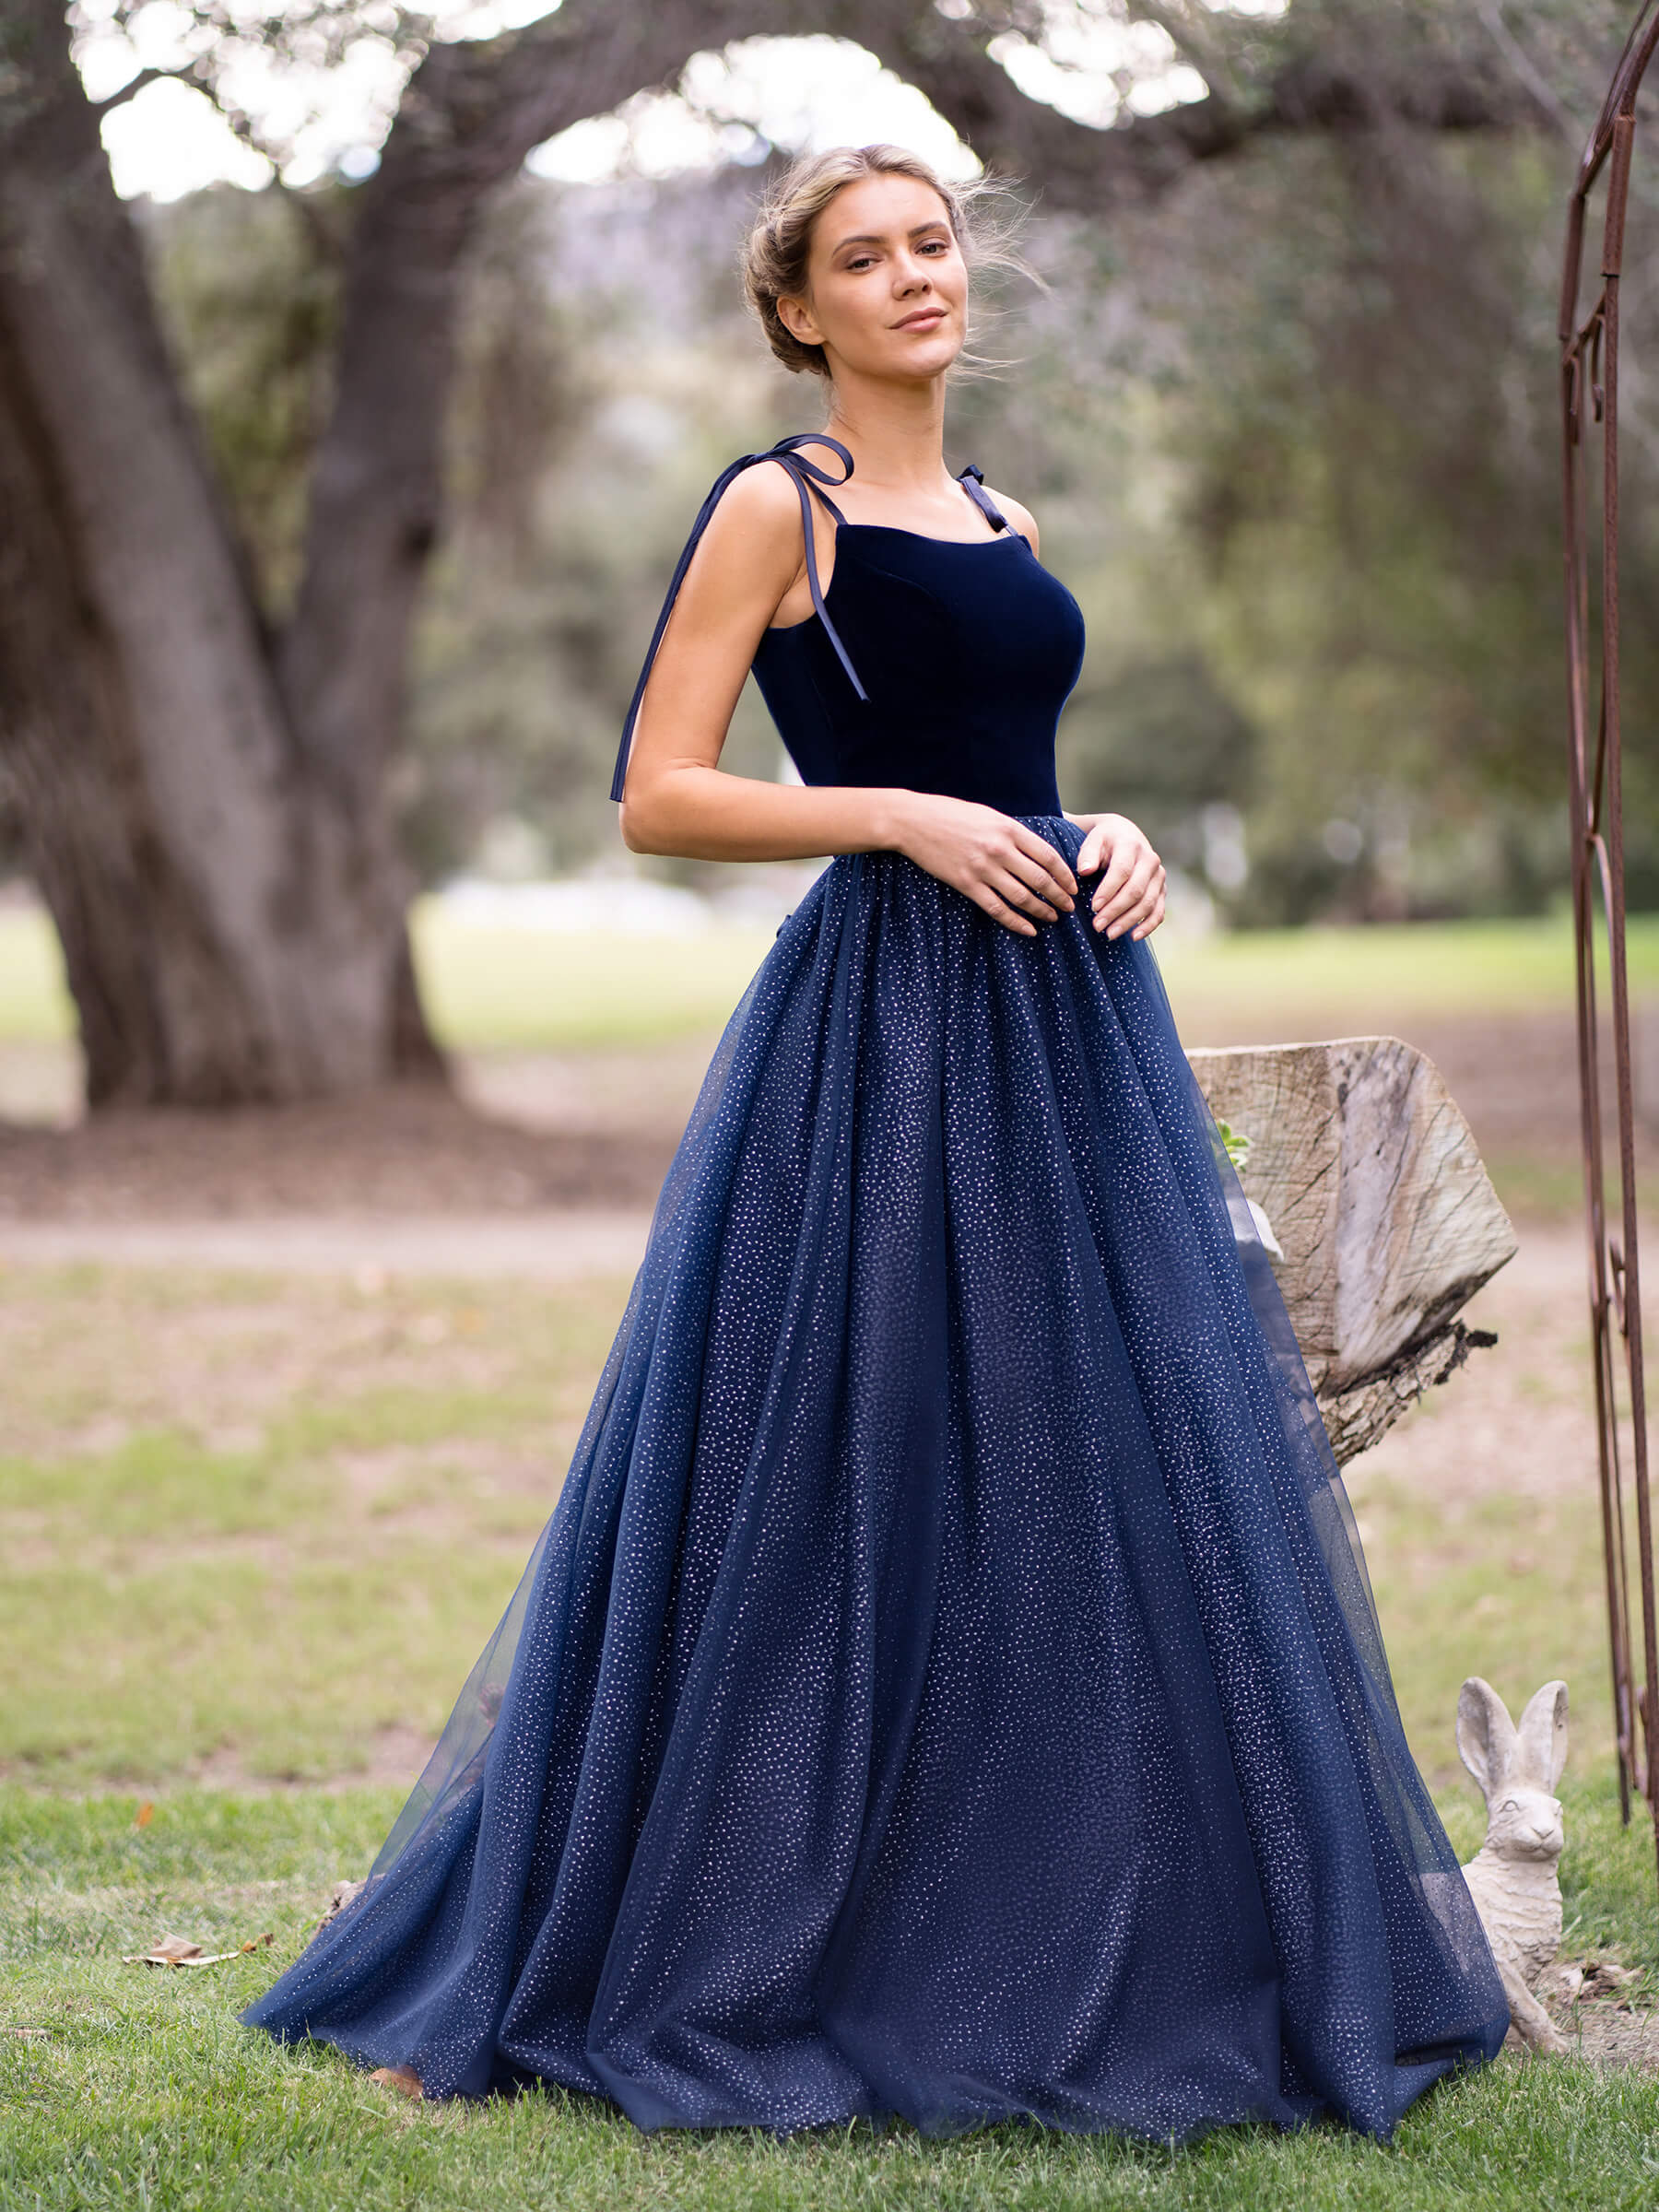 Buy a evening dress from velvet and tulle bodysuit Ukraine